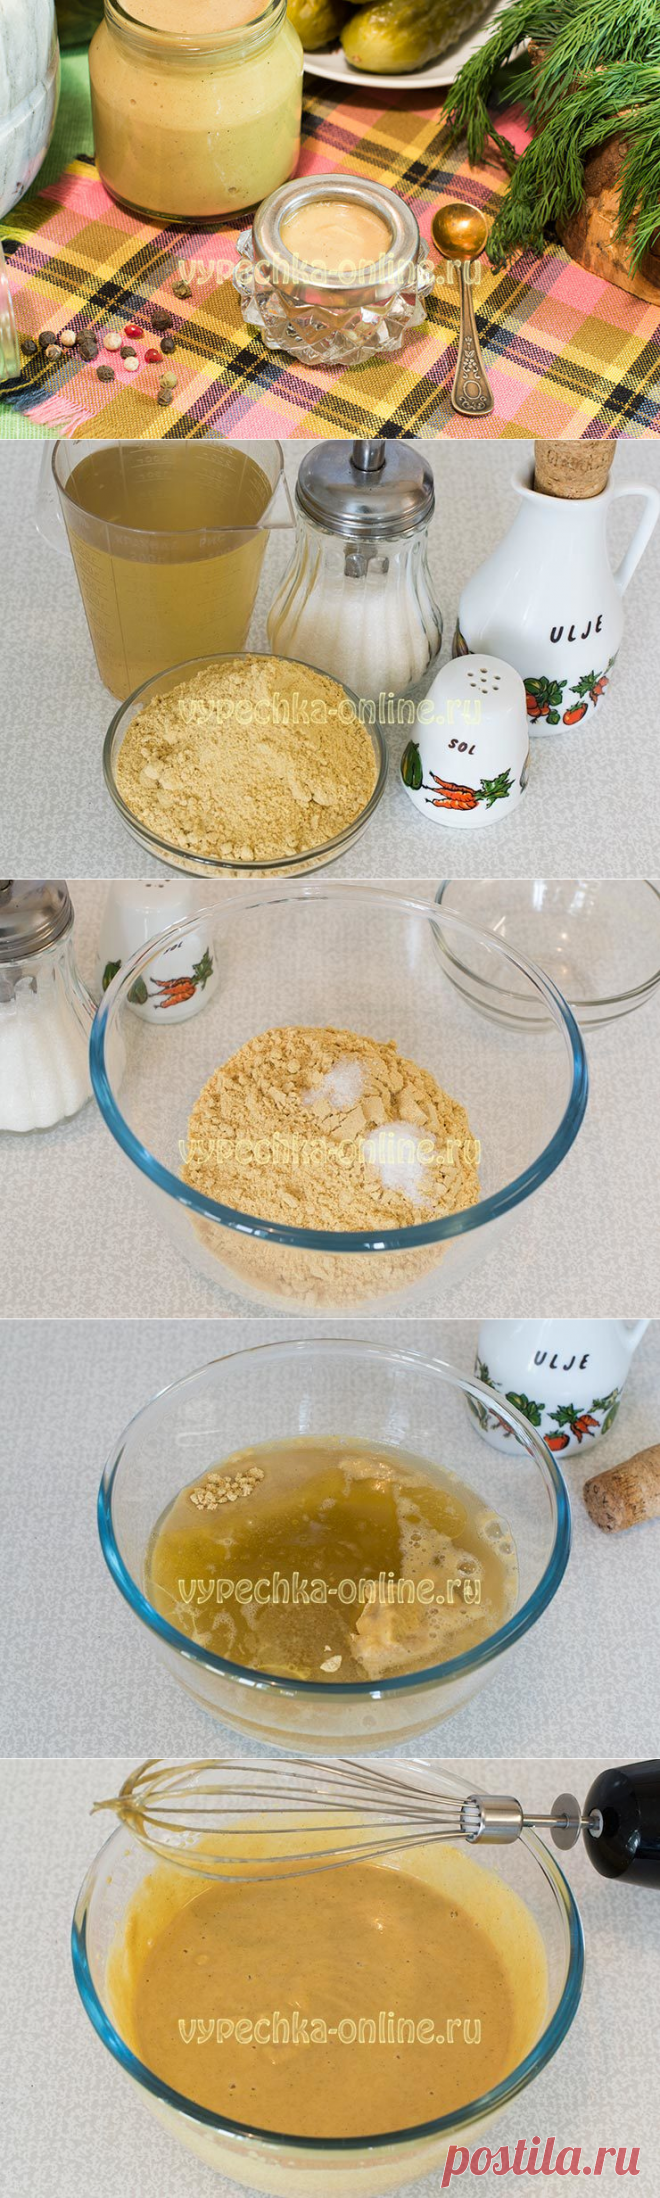 Приготовление горчицы на воде